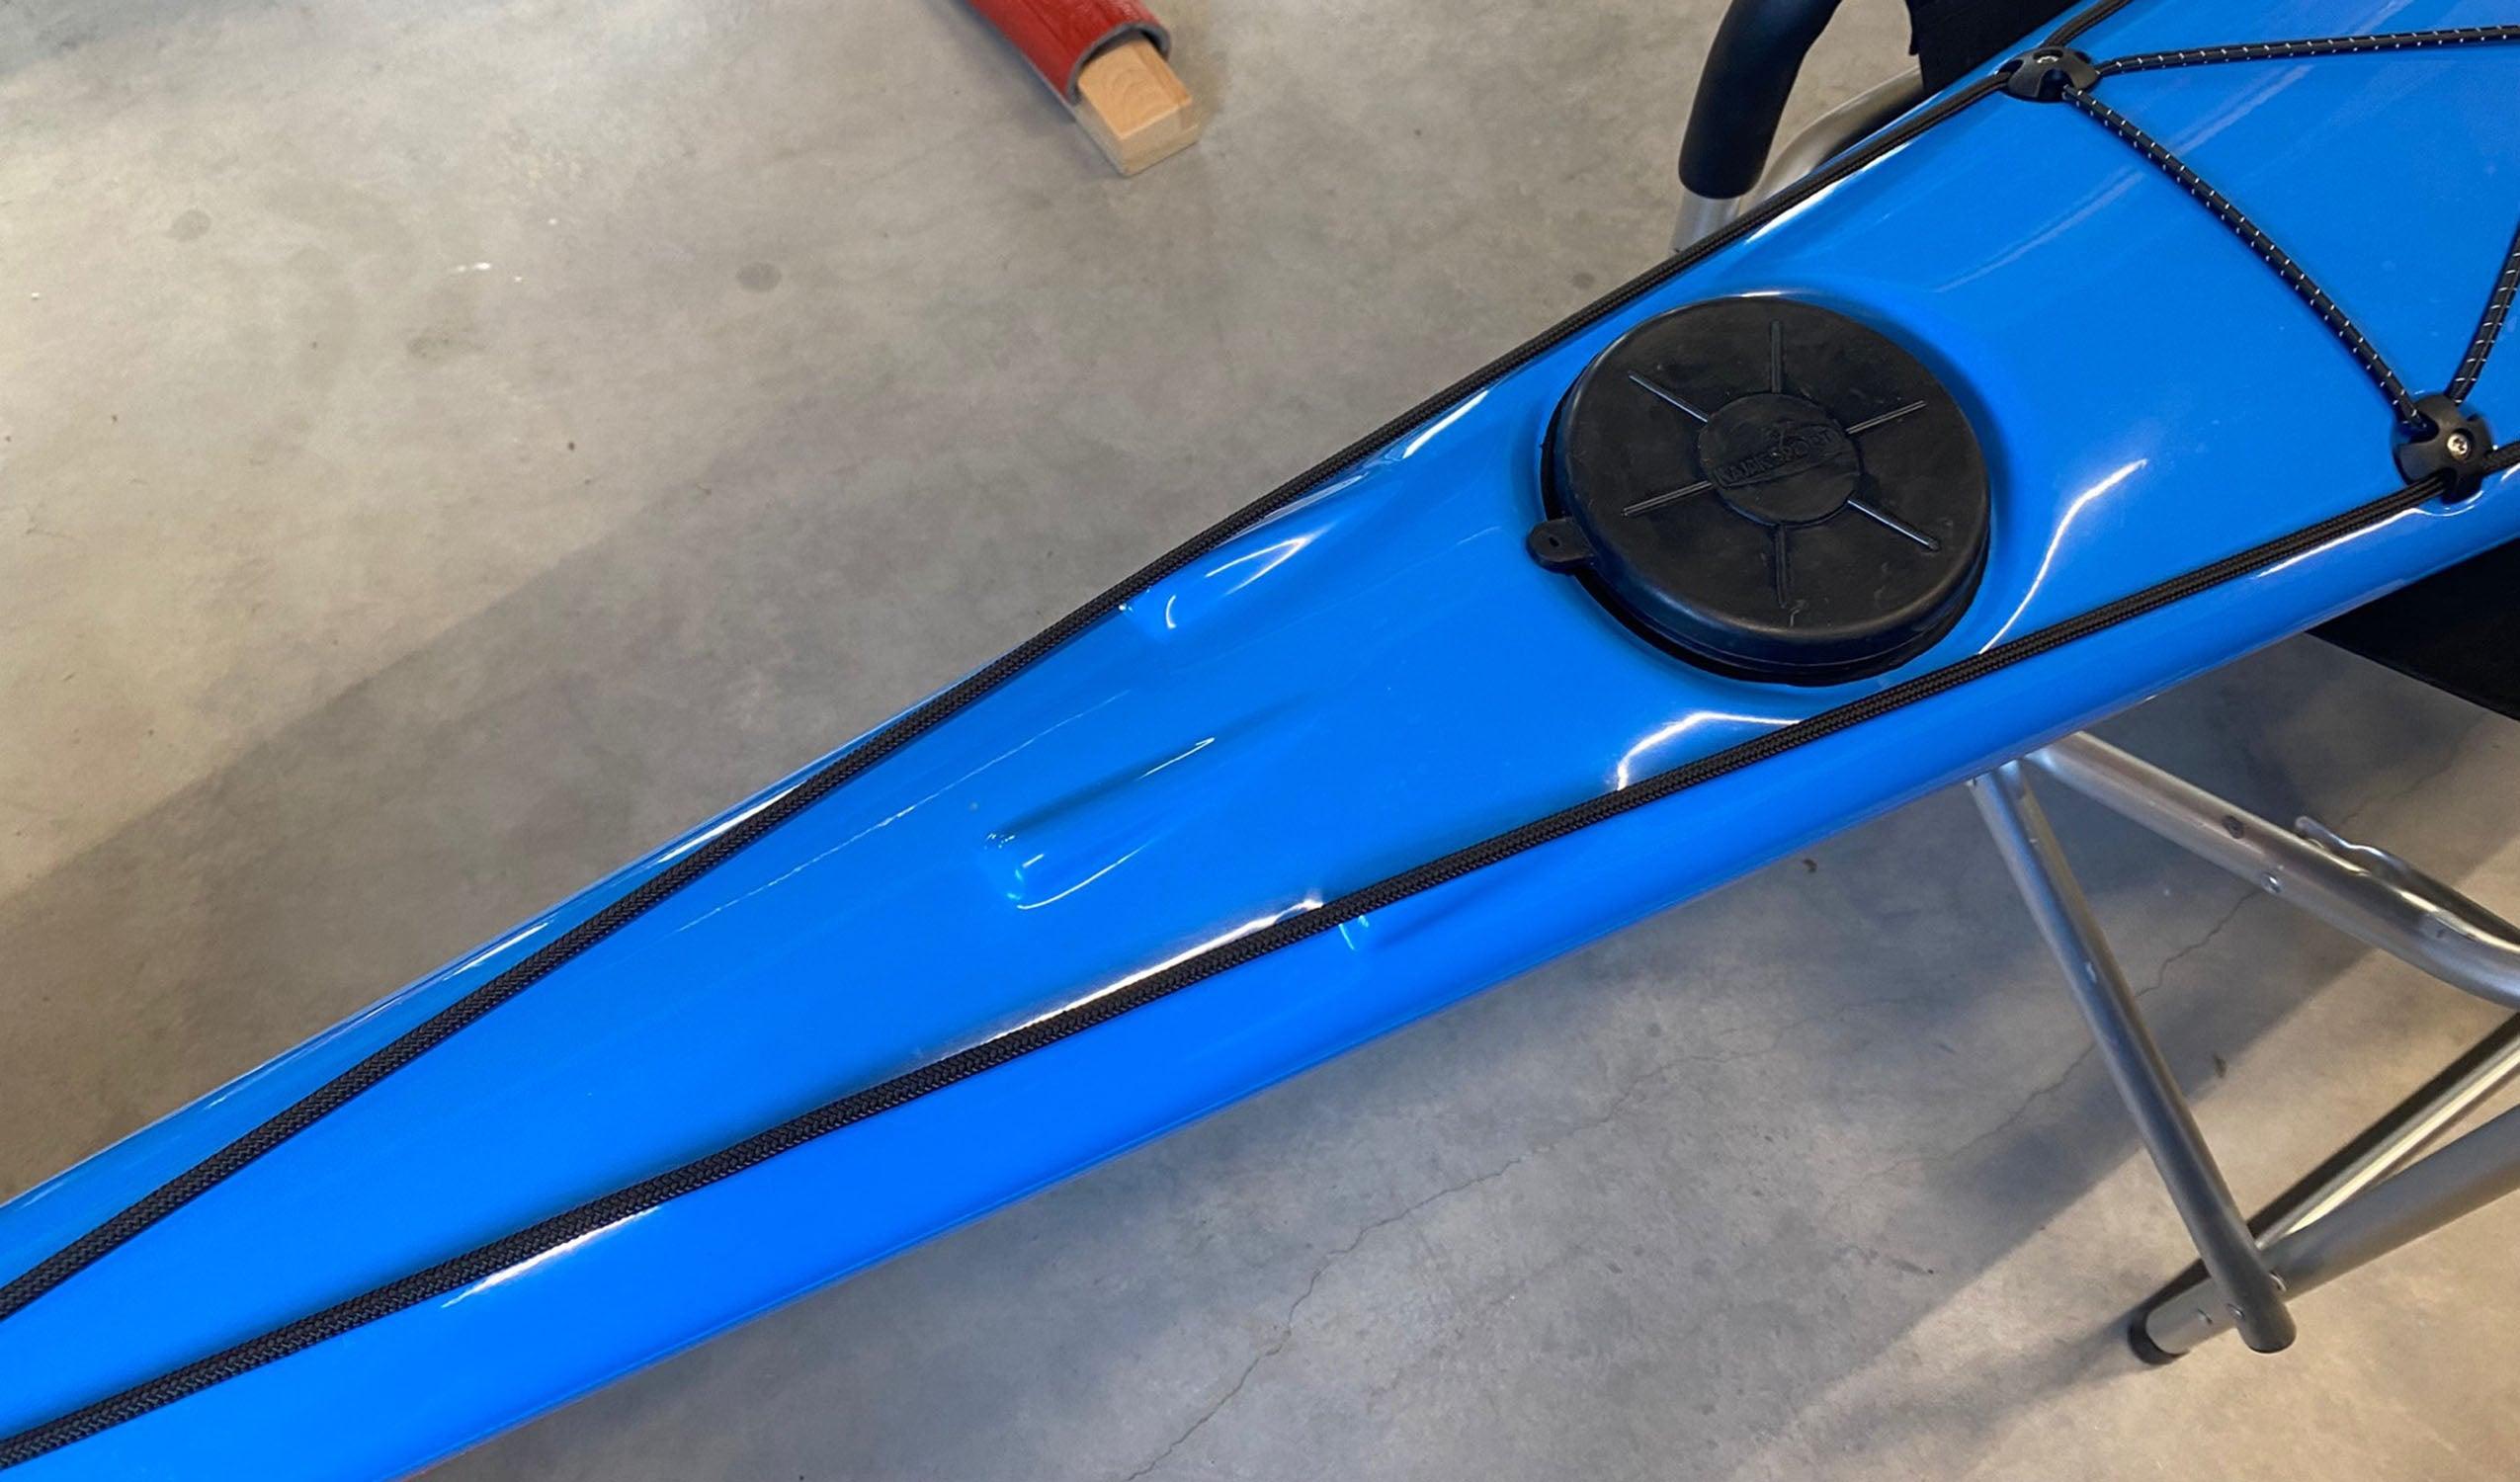 Produktbild von Kajak " Artisan 5G Traditional-blau orange " der Marke SKIM Kayaks für 3155.00 €. Erhältlich online bei Lite Venture ( www.liteventure.de )